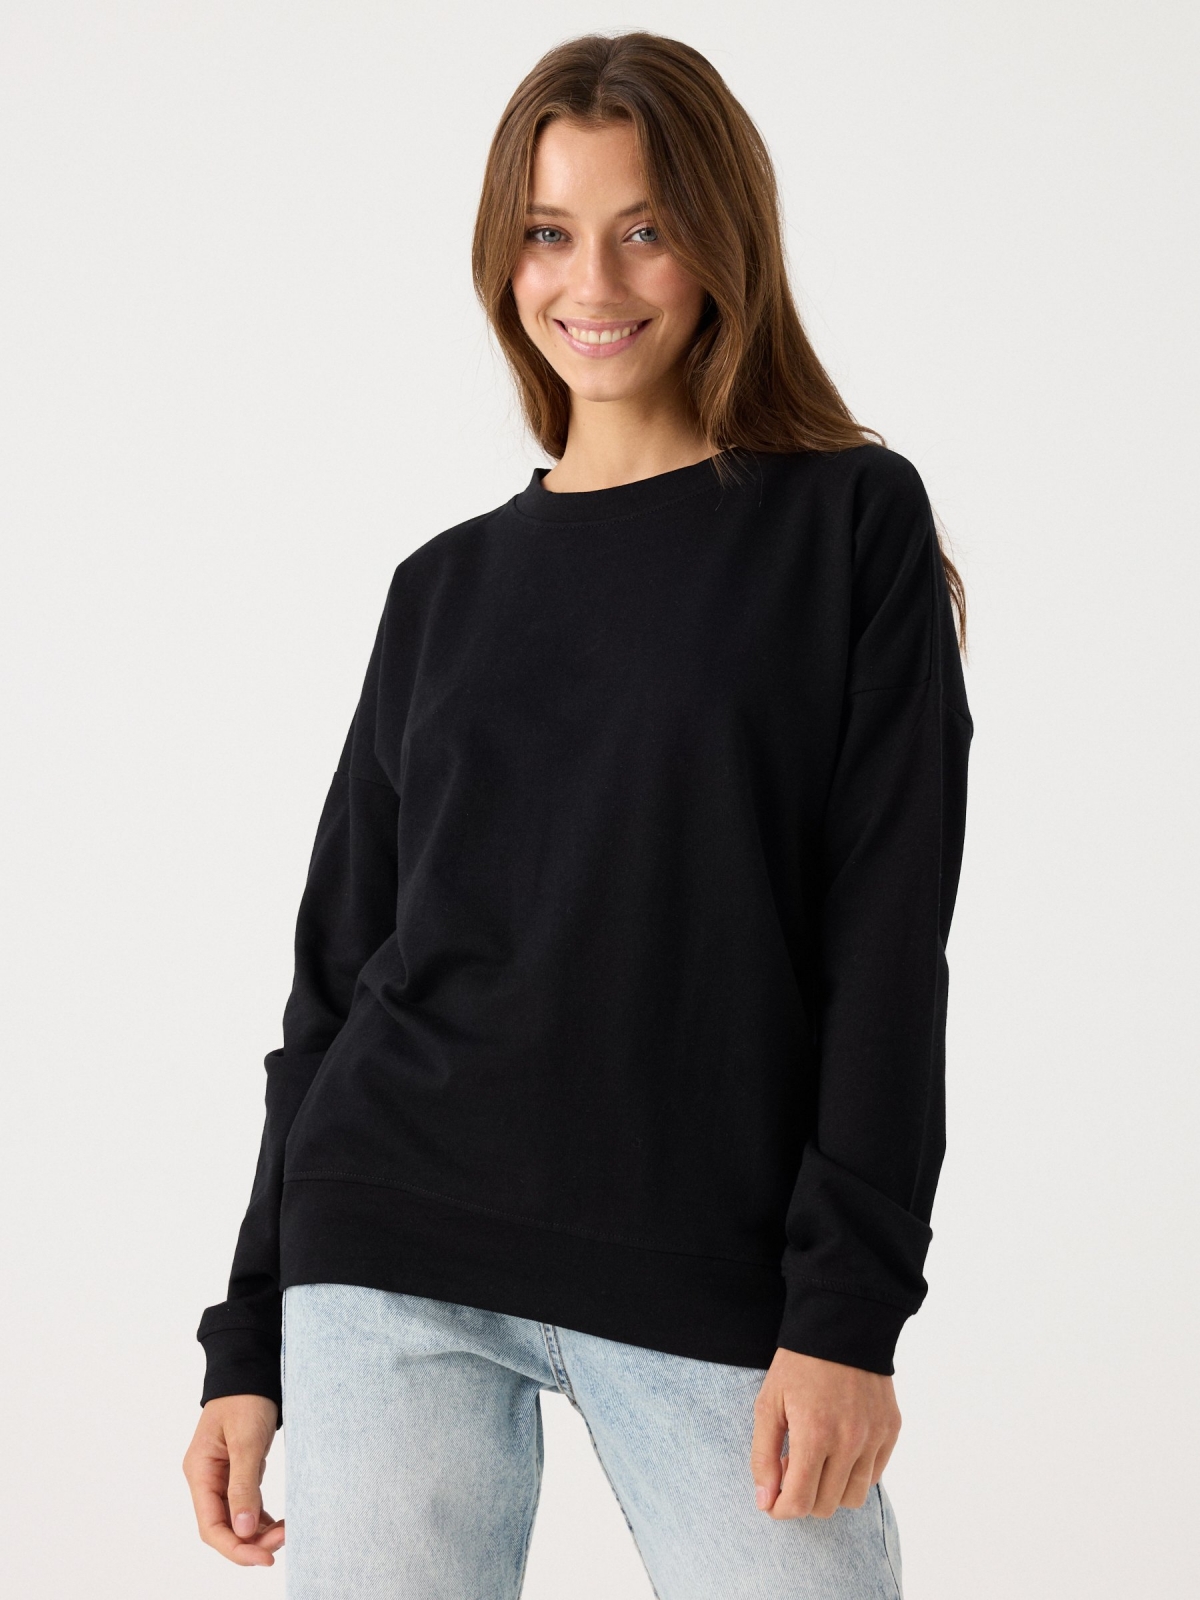 Sweatshirt básica preto vista meia frontal